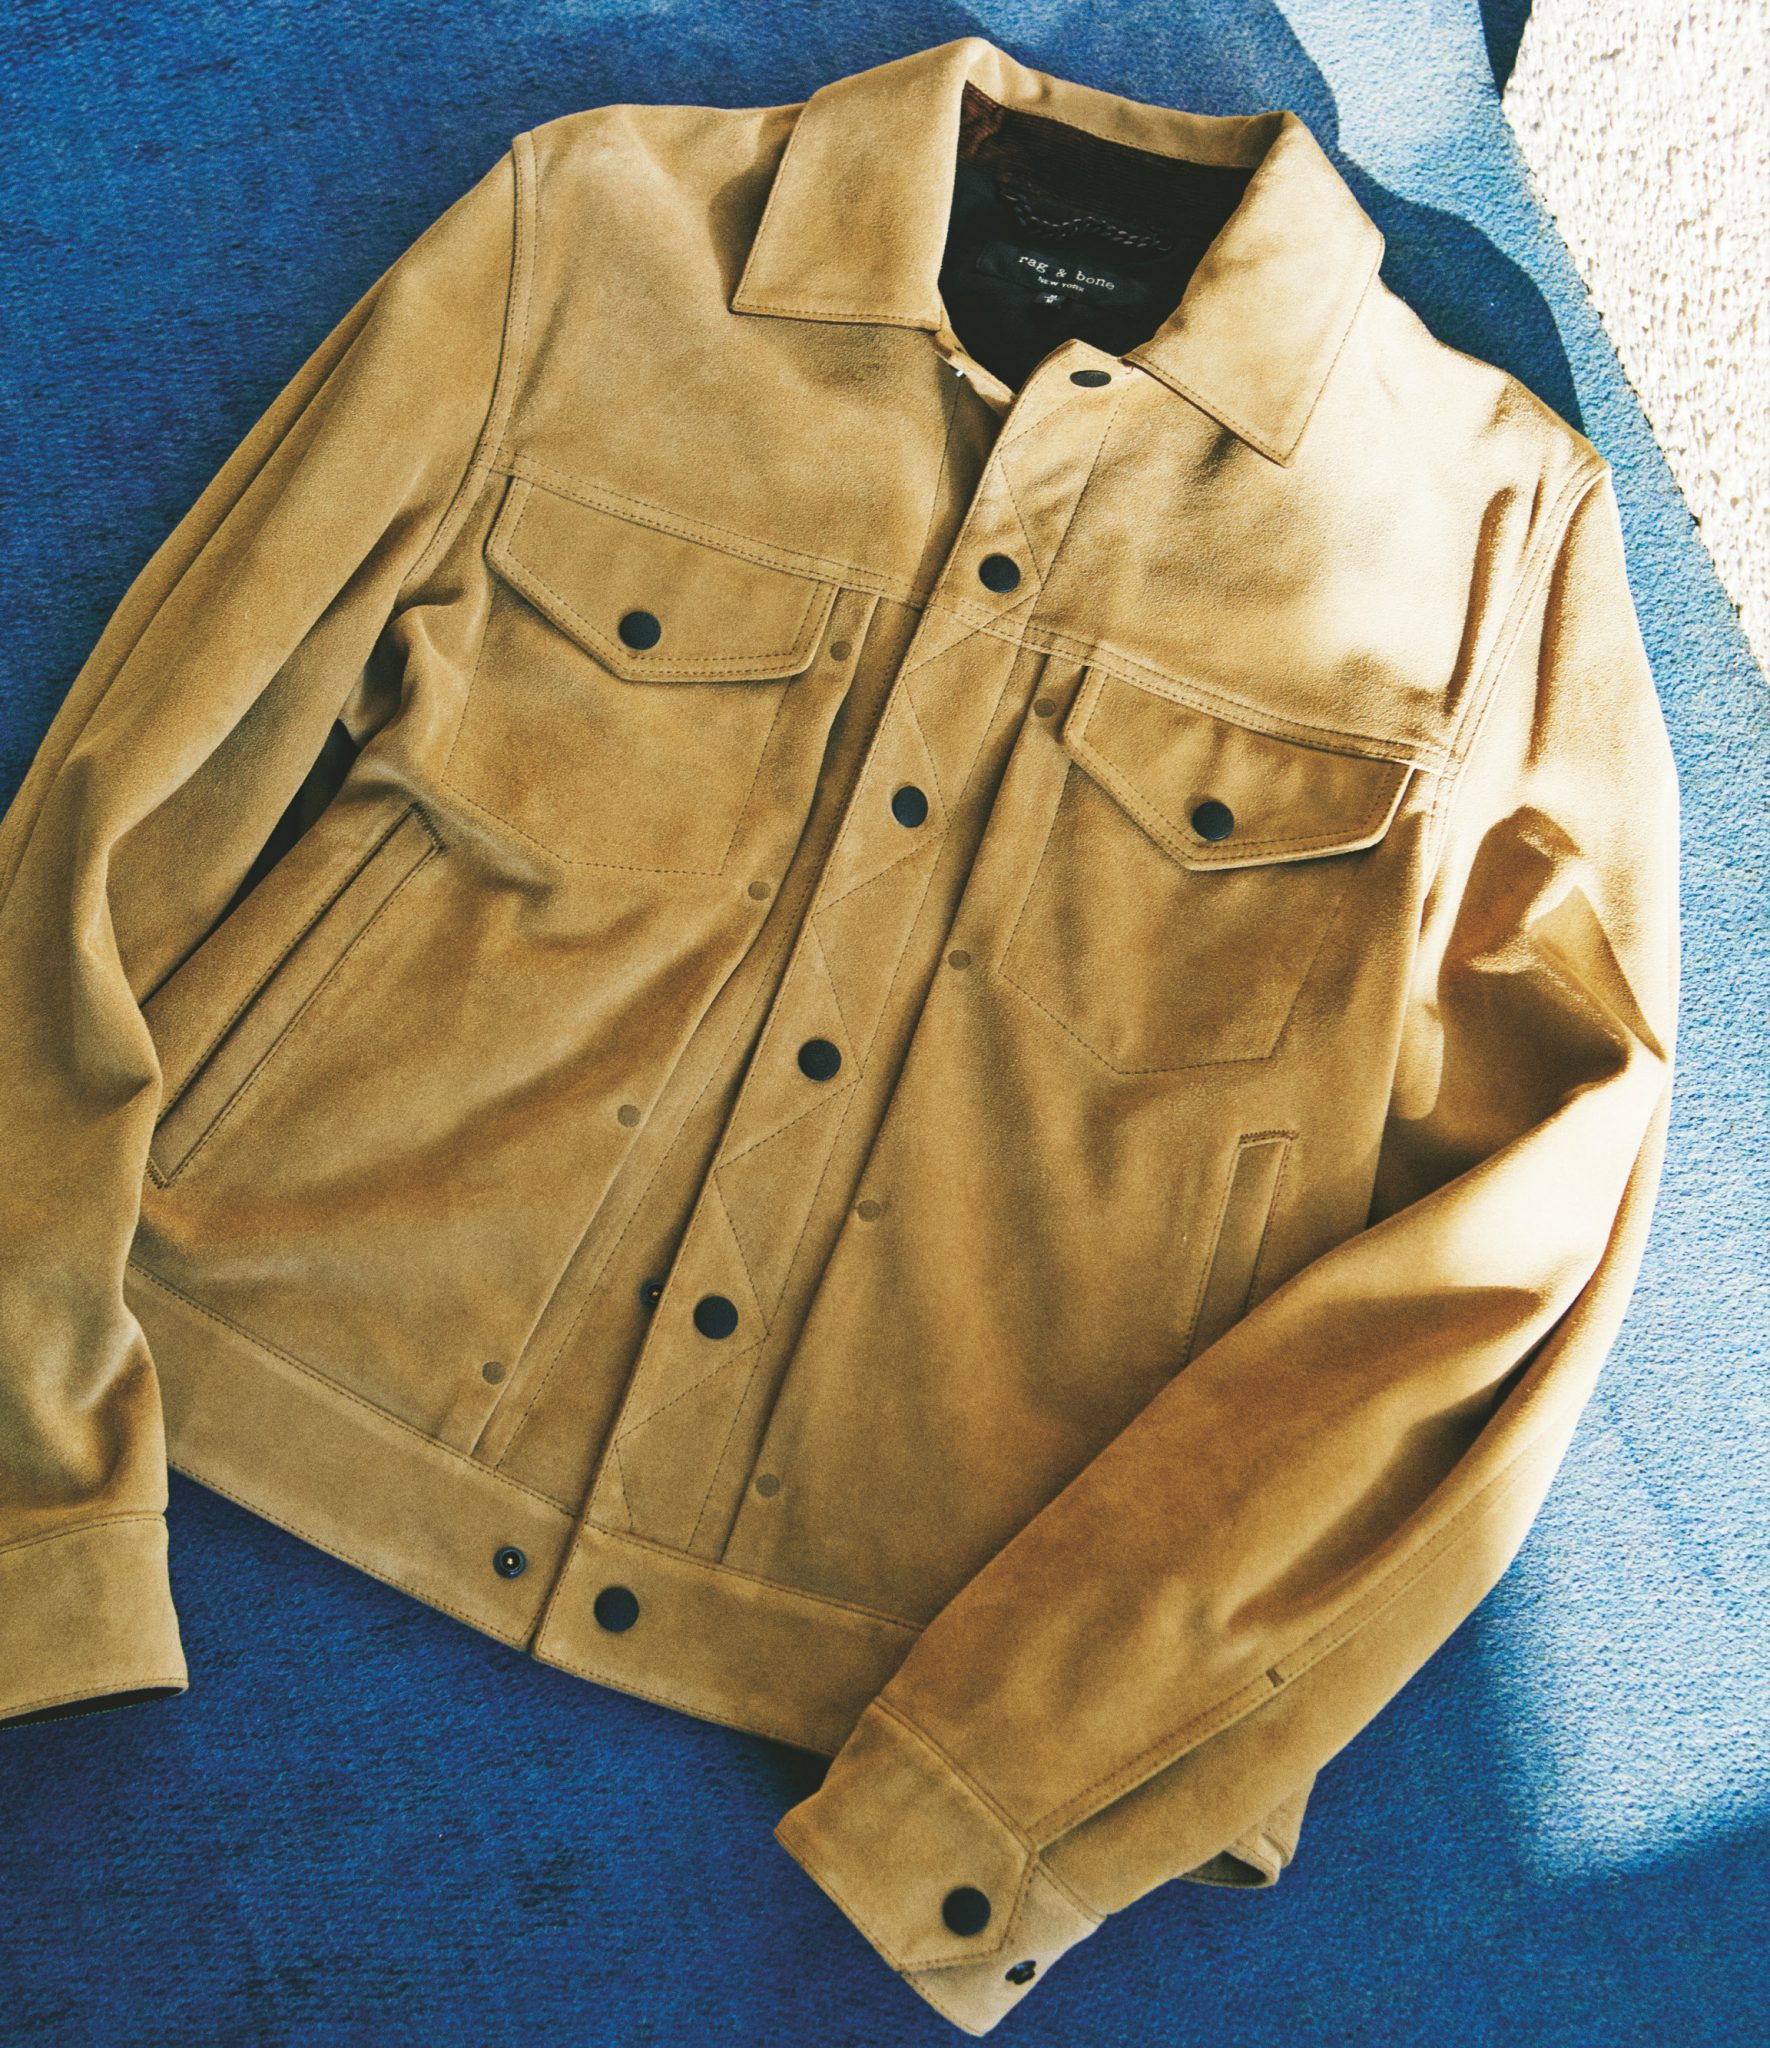 ライダースかgジャンタイプか 男っぽく着るレザージャケットの２択 Men Sjoker Premium メンズファッション雑誌